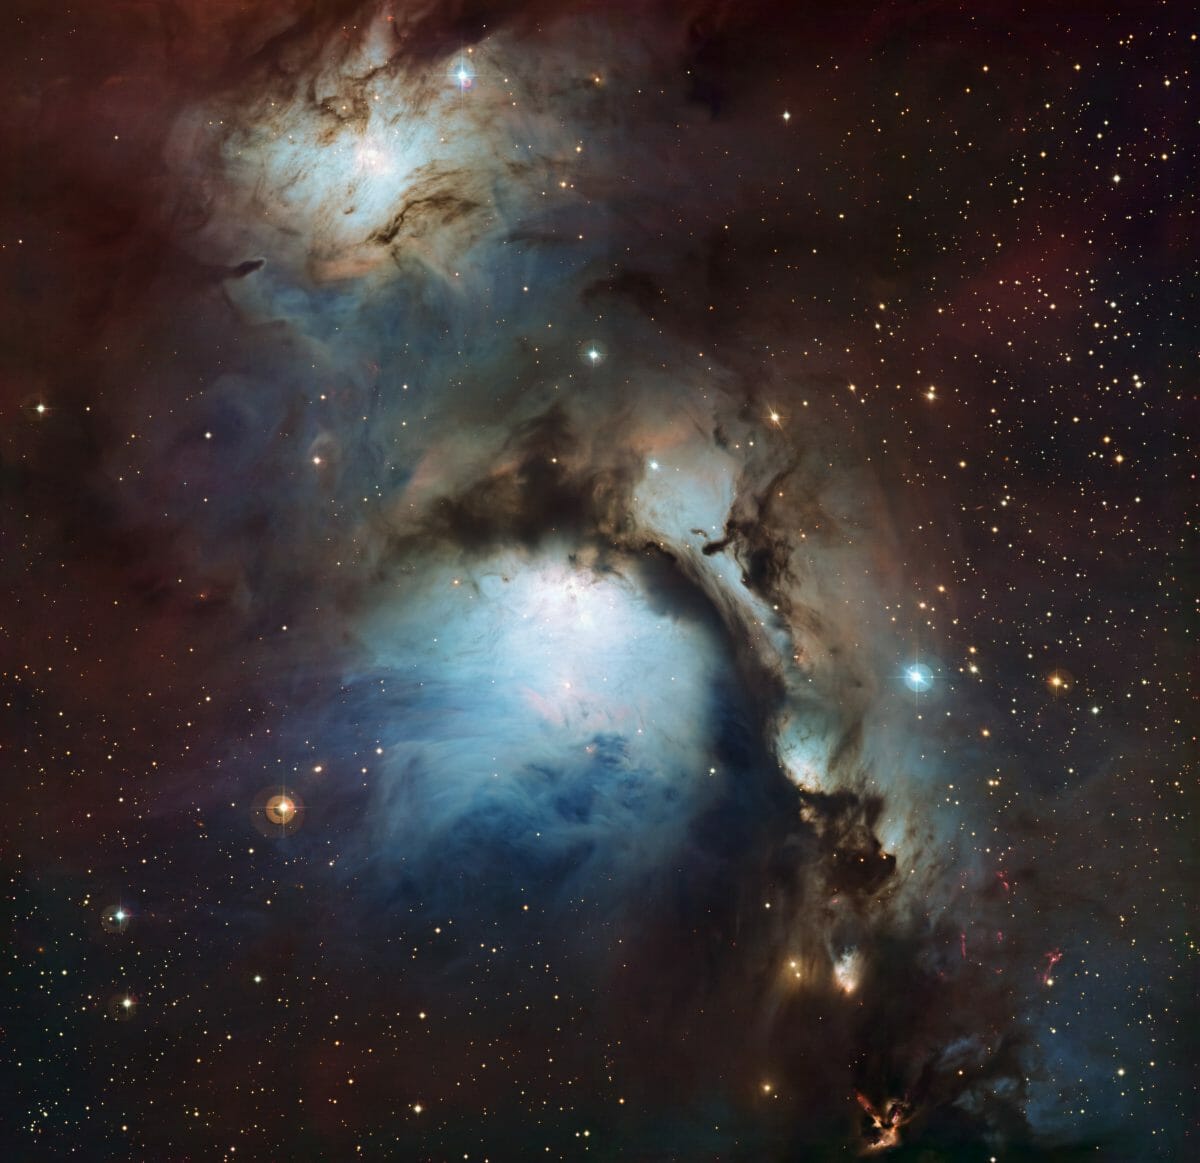 力強い星の光を反射して輝く“オリオン座”の星雲「M78」